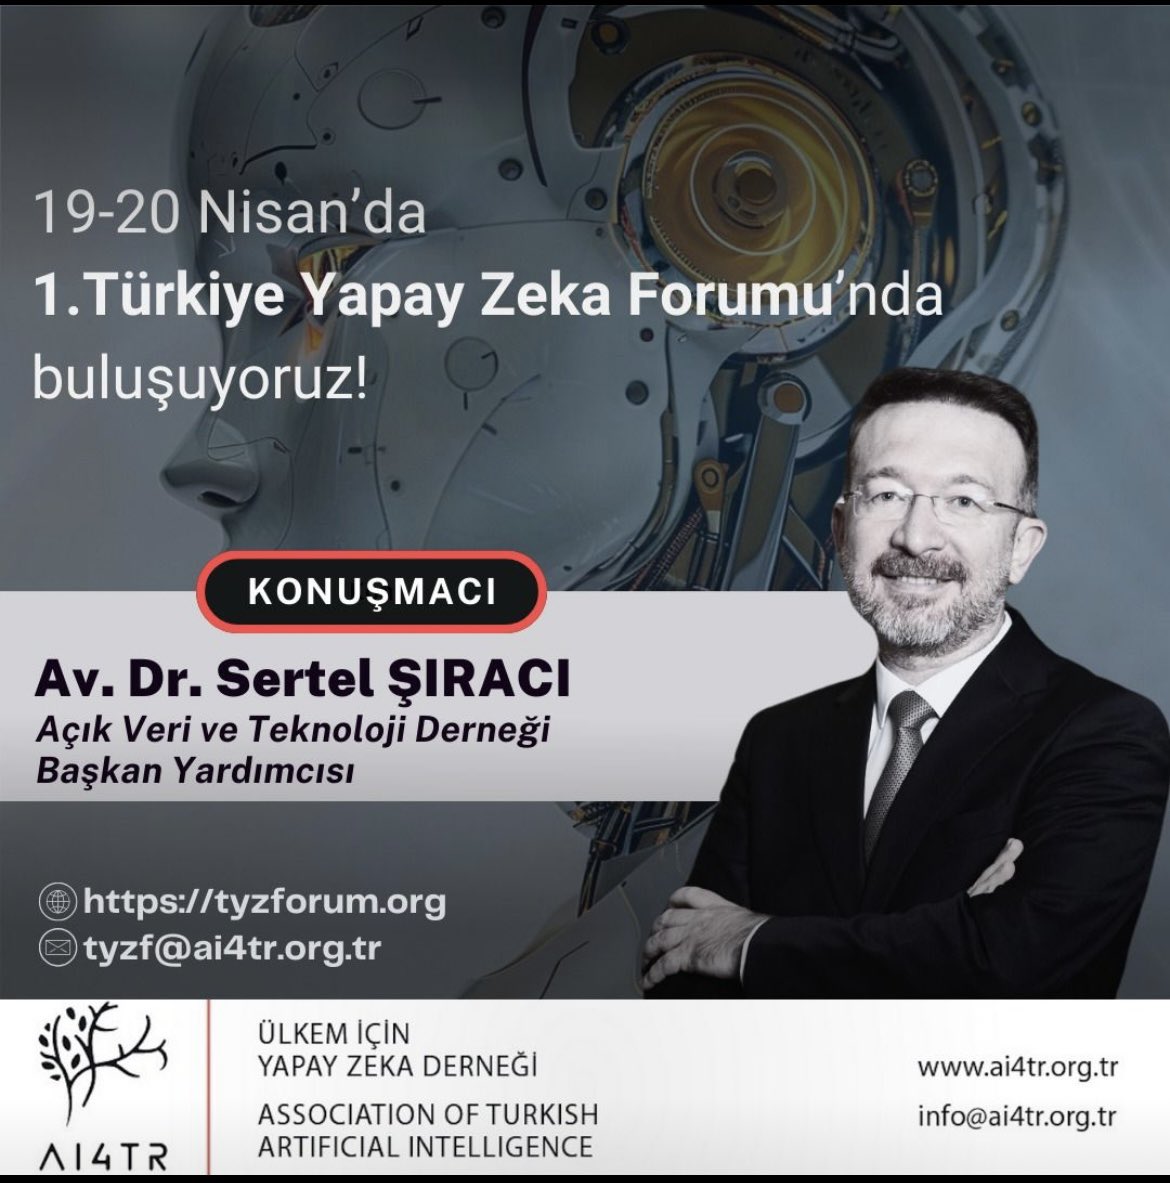 📍Açık Veri & Yapay Zeka İlişkisi ⏰ 19-20 Nisan Türkiye Yapay Zeka Forumu 👉 Katılım için tyzforum.org